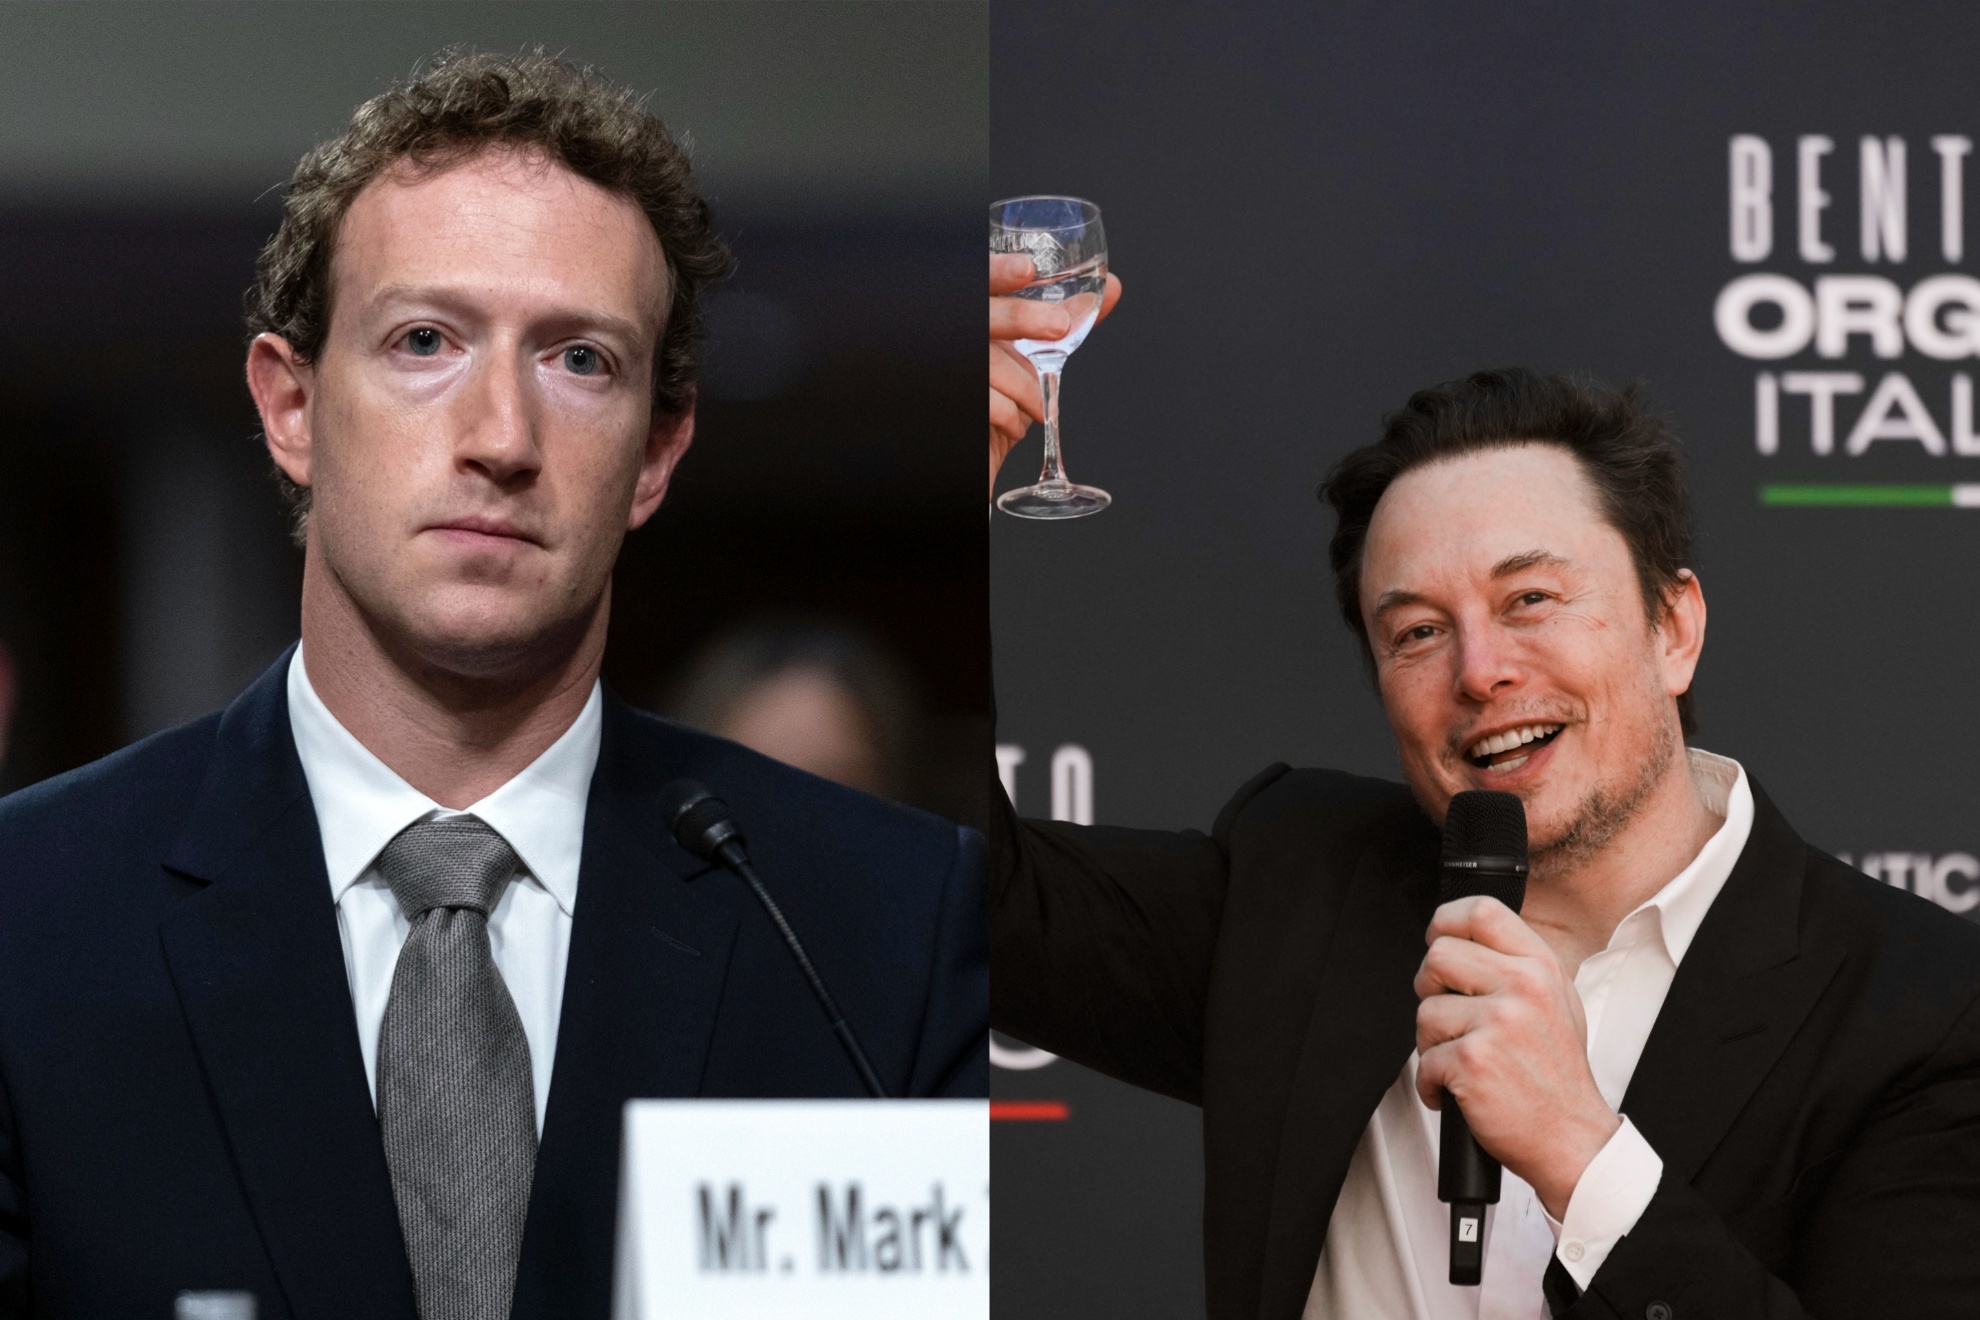 Mashup image of Mark Zuckerberg and Elon Musk